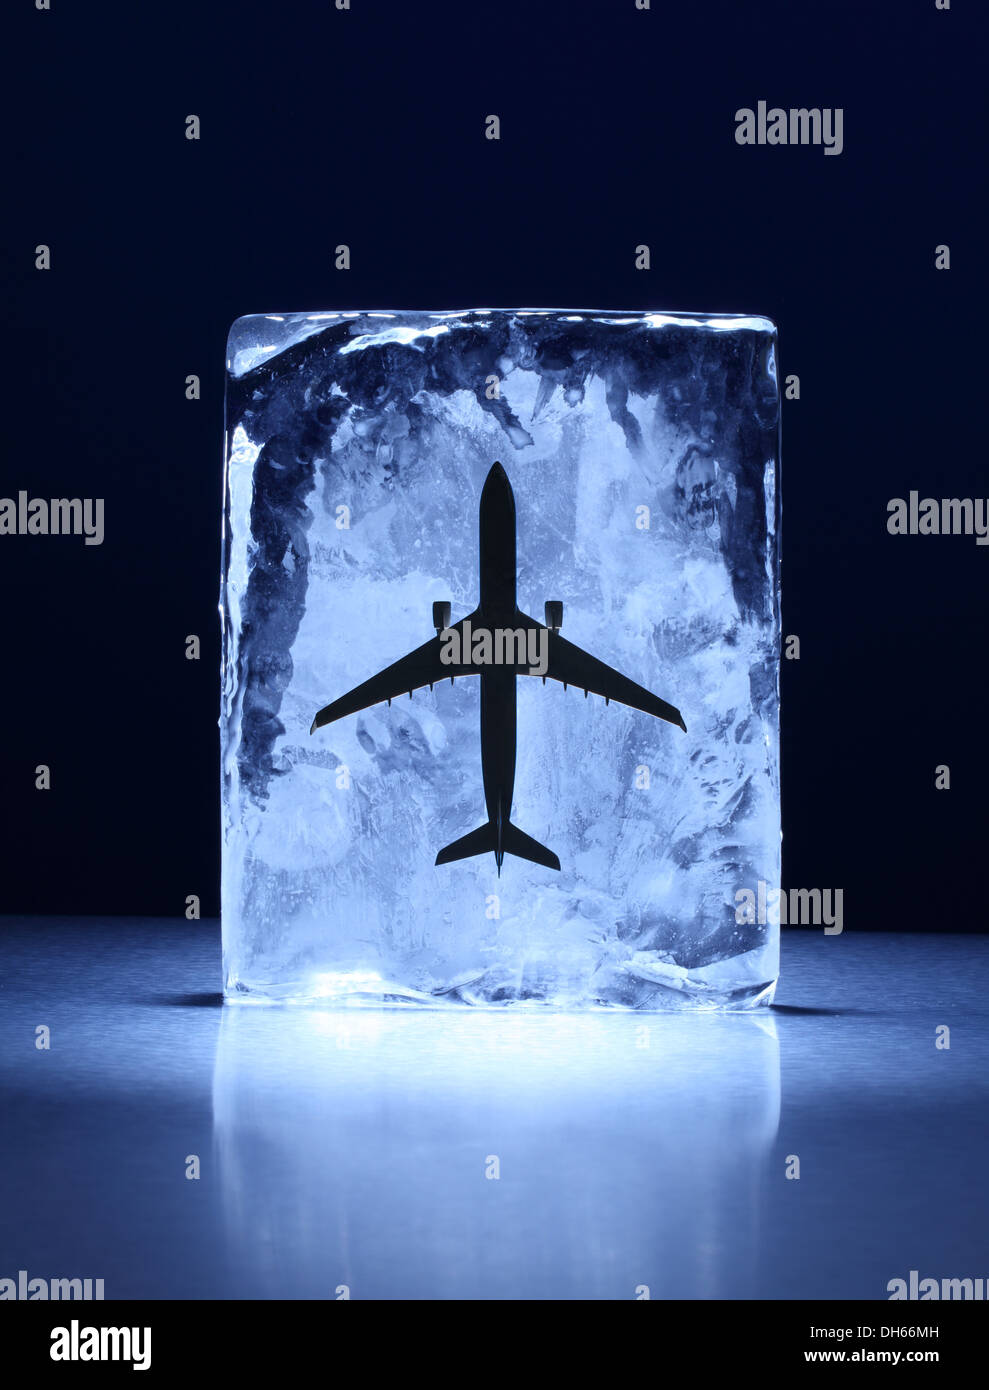 Ein Modellflugzeug in einem klaren Eisblock eingefroren Stockfoto